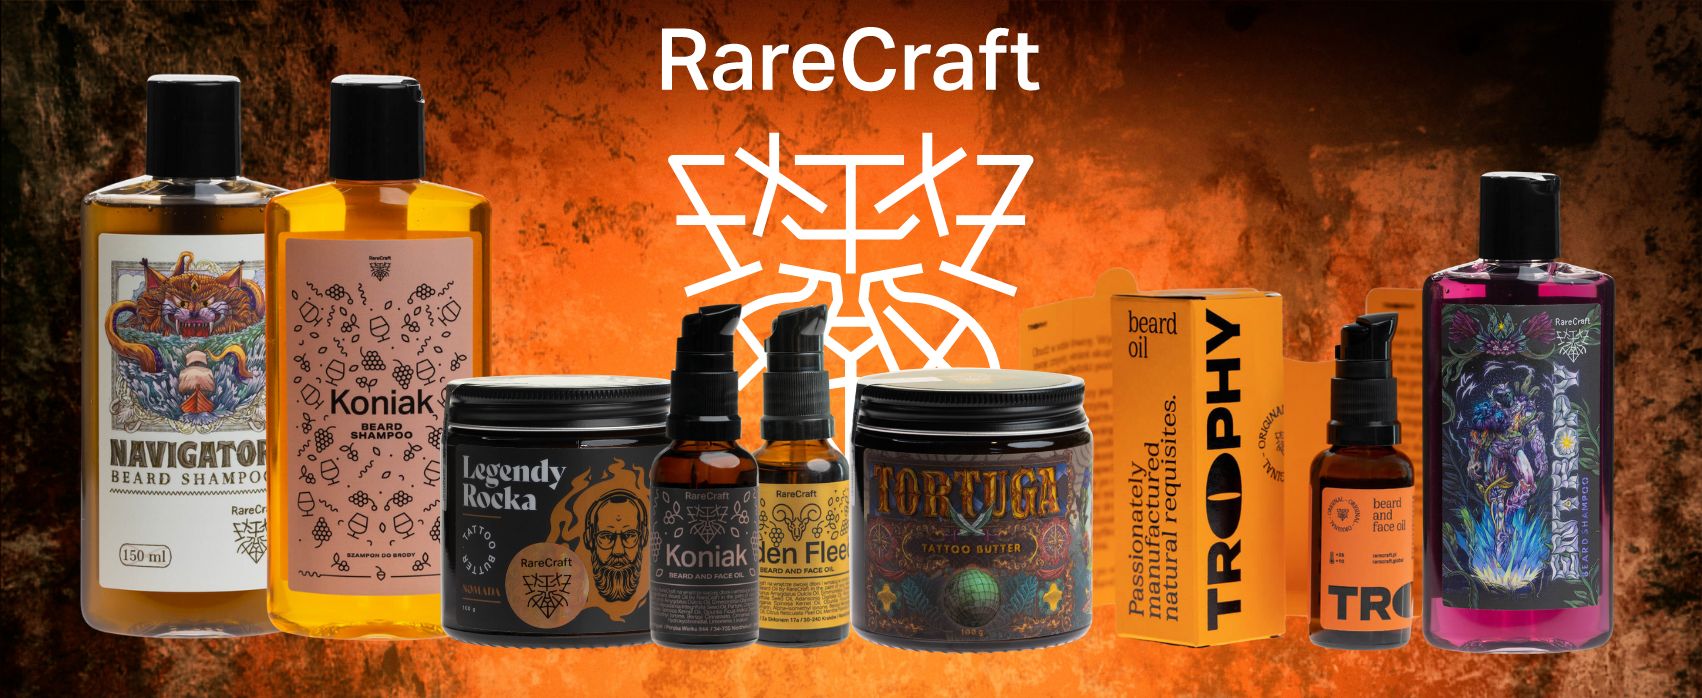 RareCraft-Slickstyle-cz-banner